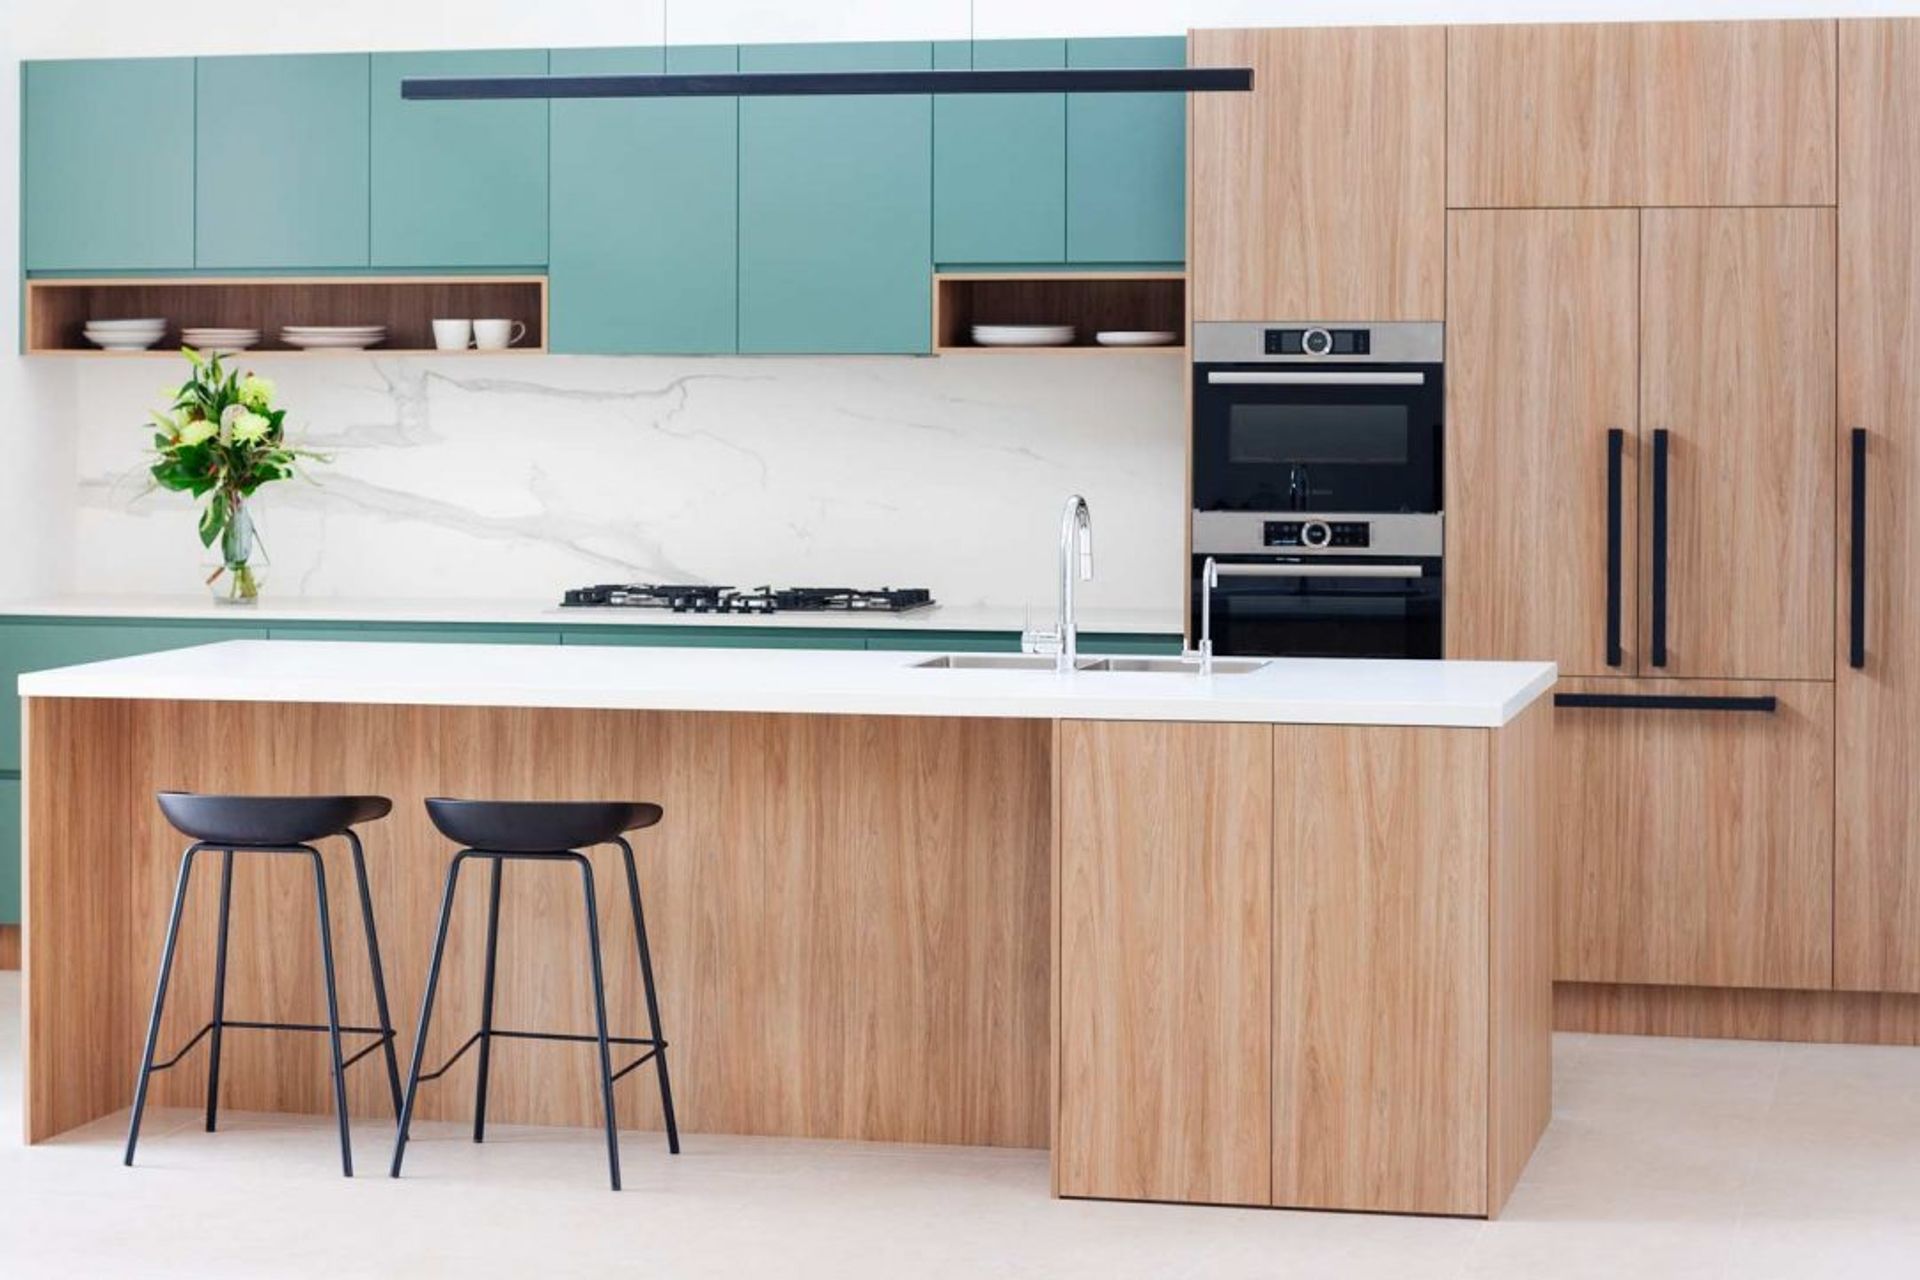 kitchen-design-sydney-modern-bosch-fisher-paykel-green-timber-premier-kitchens-07-1084x723.jpg